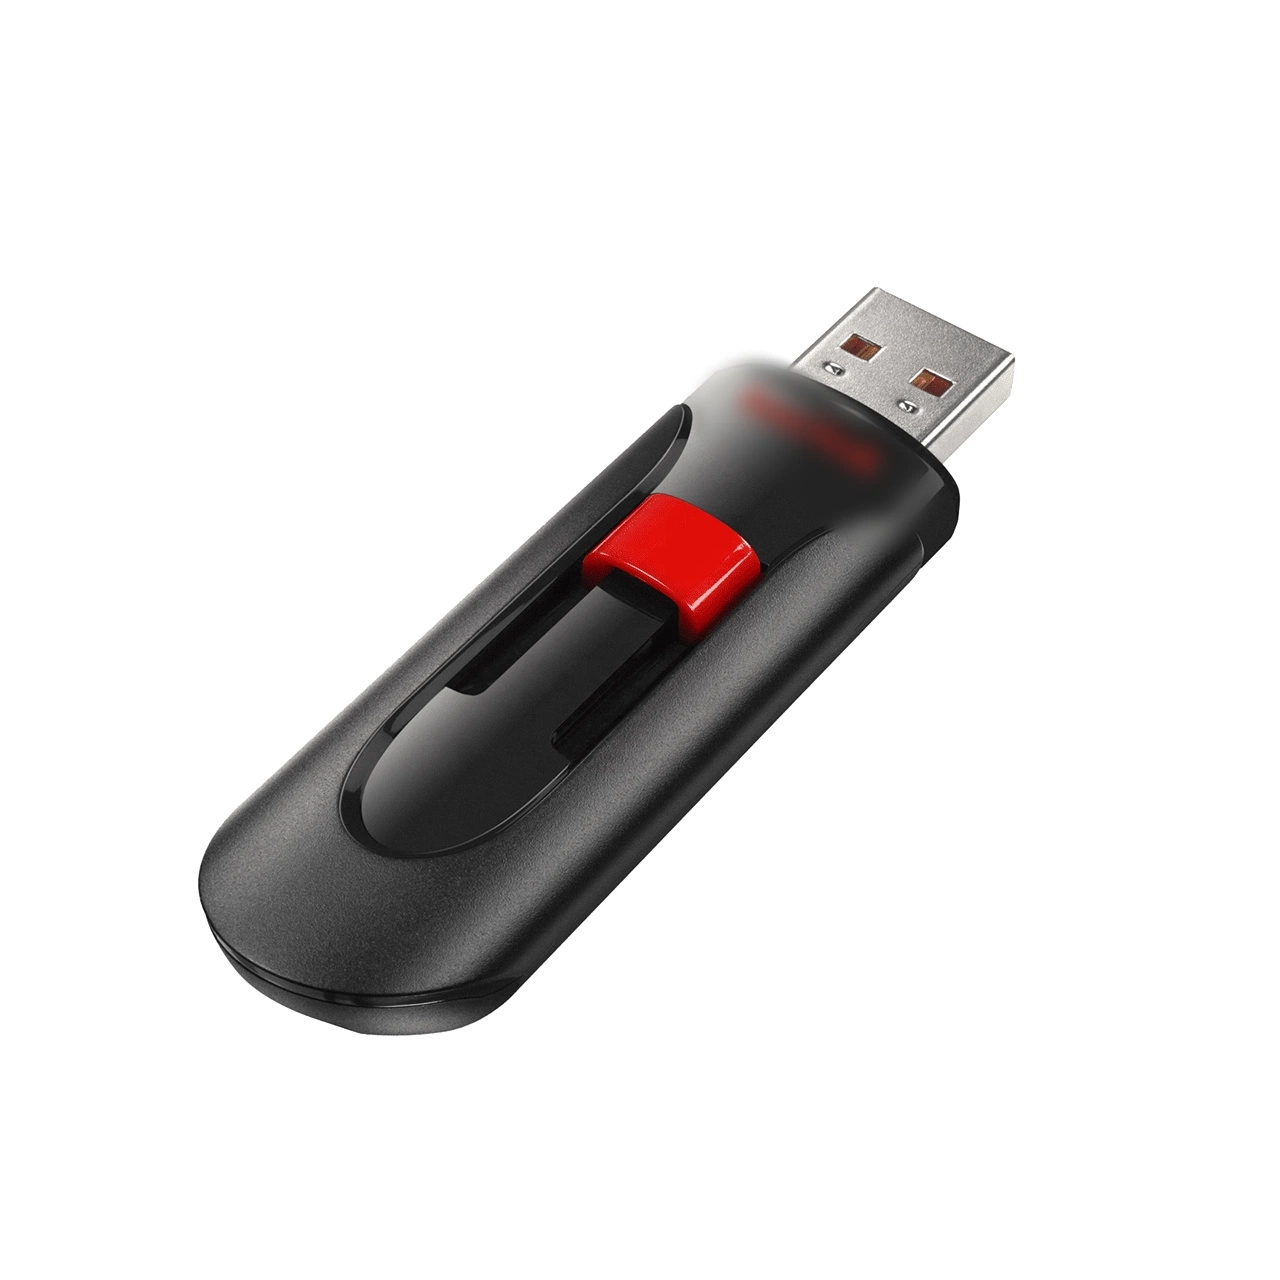 محرك أقراص USB محمول عالي الجودة للبيع السريع باستخدام قلم صغير ذاكرة Pendrive USB Stick 128 جيجا بايت مع الشعار الخاص بك